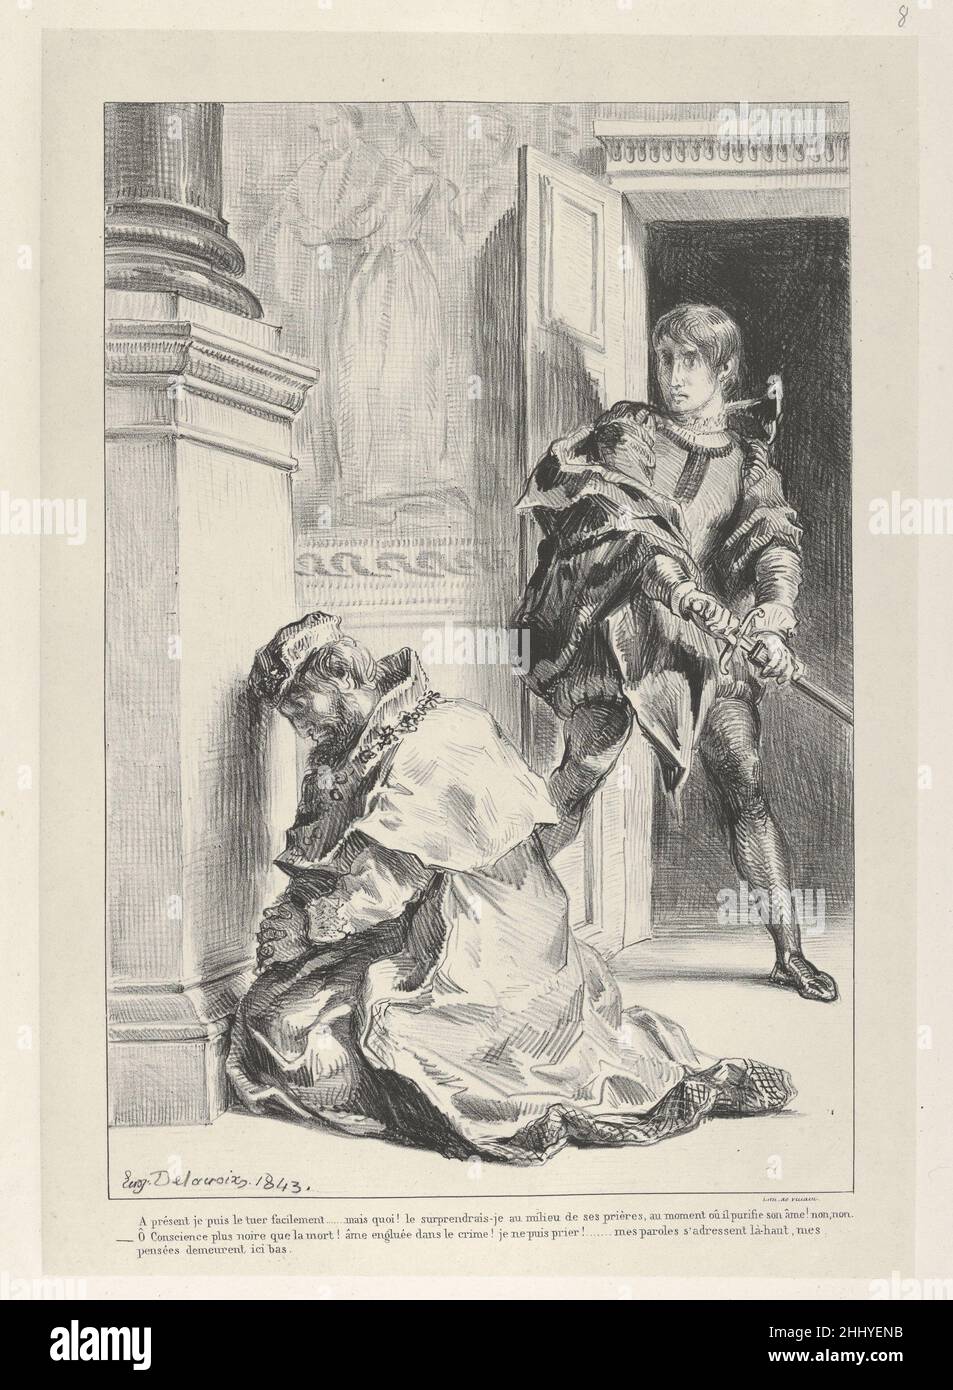 Frazione tenta di uccidere il Re 1834–43 Eugène Delacroix Francese nel 1834 Delacroix iniziò una serie di litografie dedicate a Hamlet, creando immagini modiche che rispecchiano la tormentata psiche del principe. Scegliendo scene chiave e passaggi poetici, le immagini altamente personali e drammatiche dell'artista erano insolite in Francia, dove l'interesse per Shakespeare si sviluppò solo nel diciannovesimo secolo. Qui, nell'atto 3, scena 3, il principe si tira indietro dal vendicarsi su suo zio. Egli ha ragione che, poiché il suo potenziale obiettivo è la preghiera, ucciderlo manderebbe la sua anima direttamente in cielo, mentre il suo proprio m Foto Stock